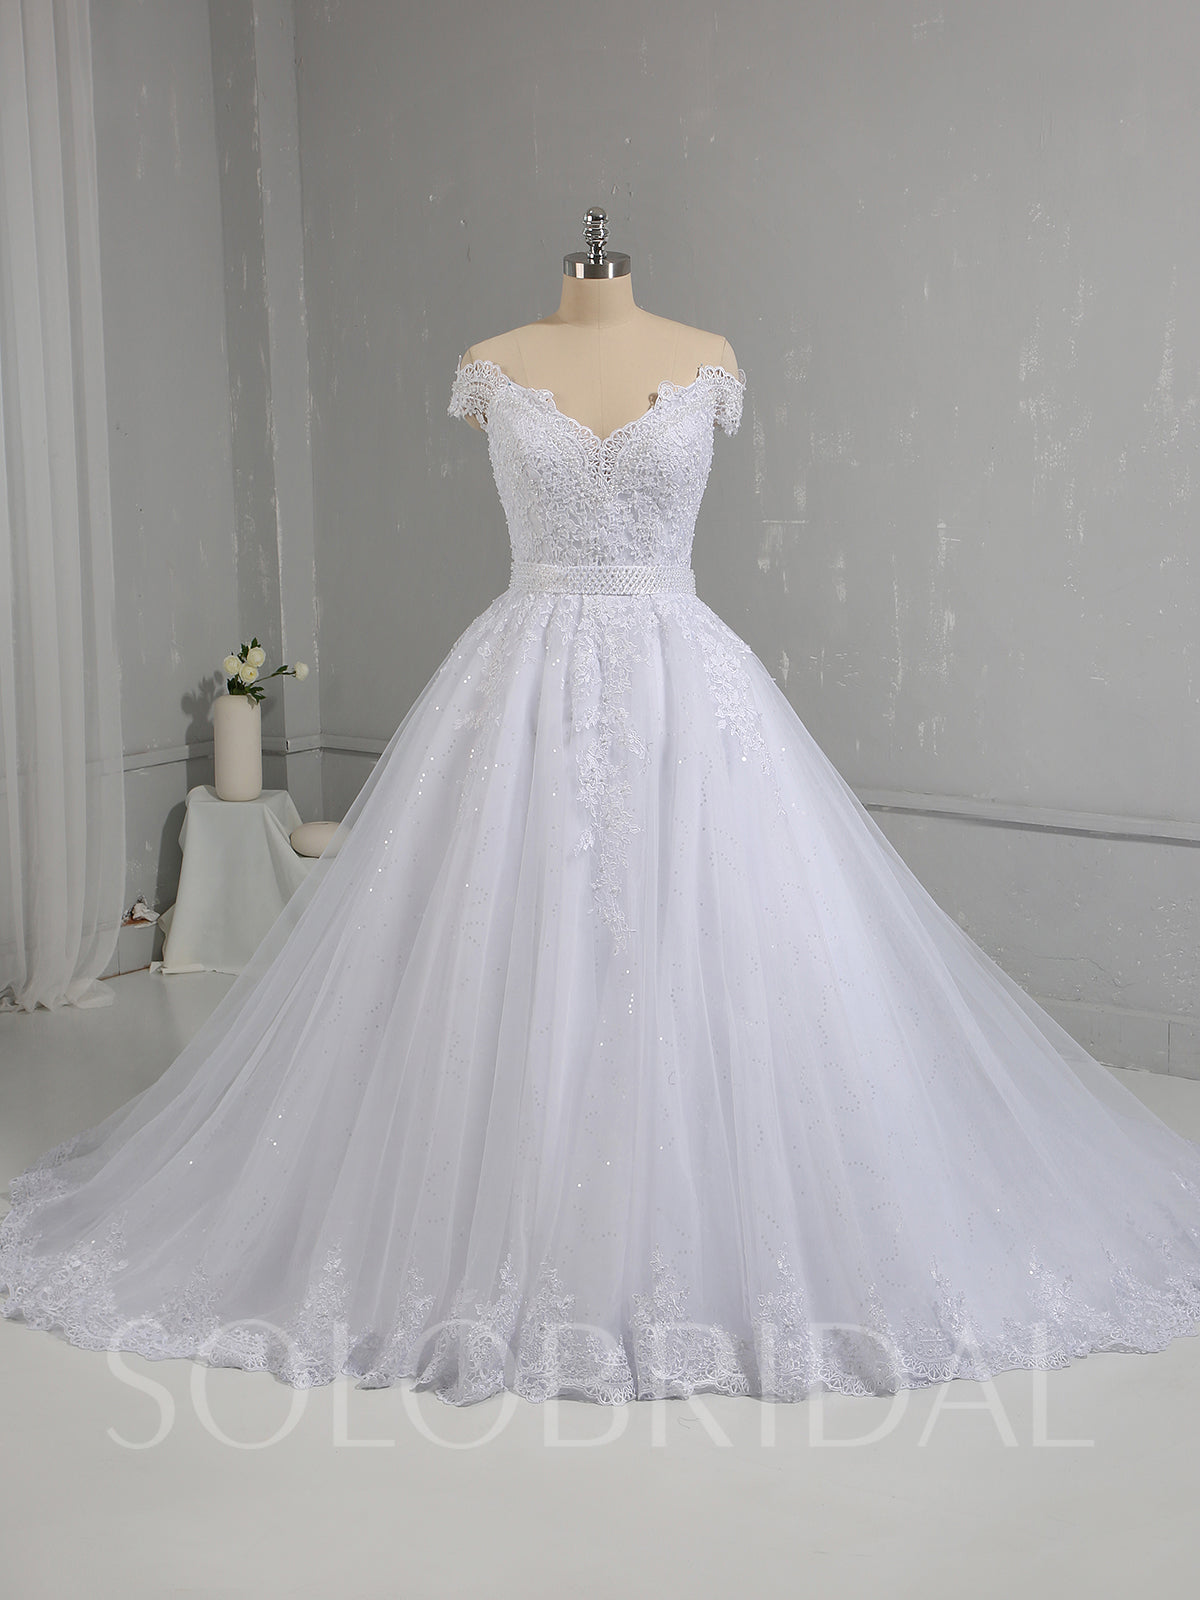 Solobridal - White Sparkling Tulle Skirt Off Shoulder Wedding Dress ...